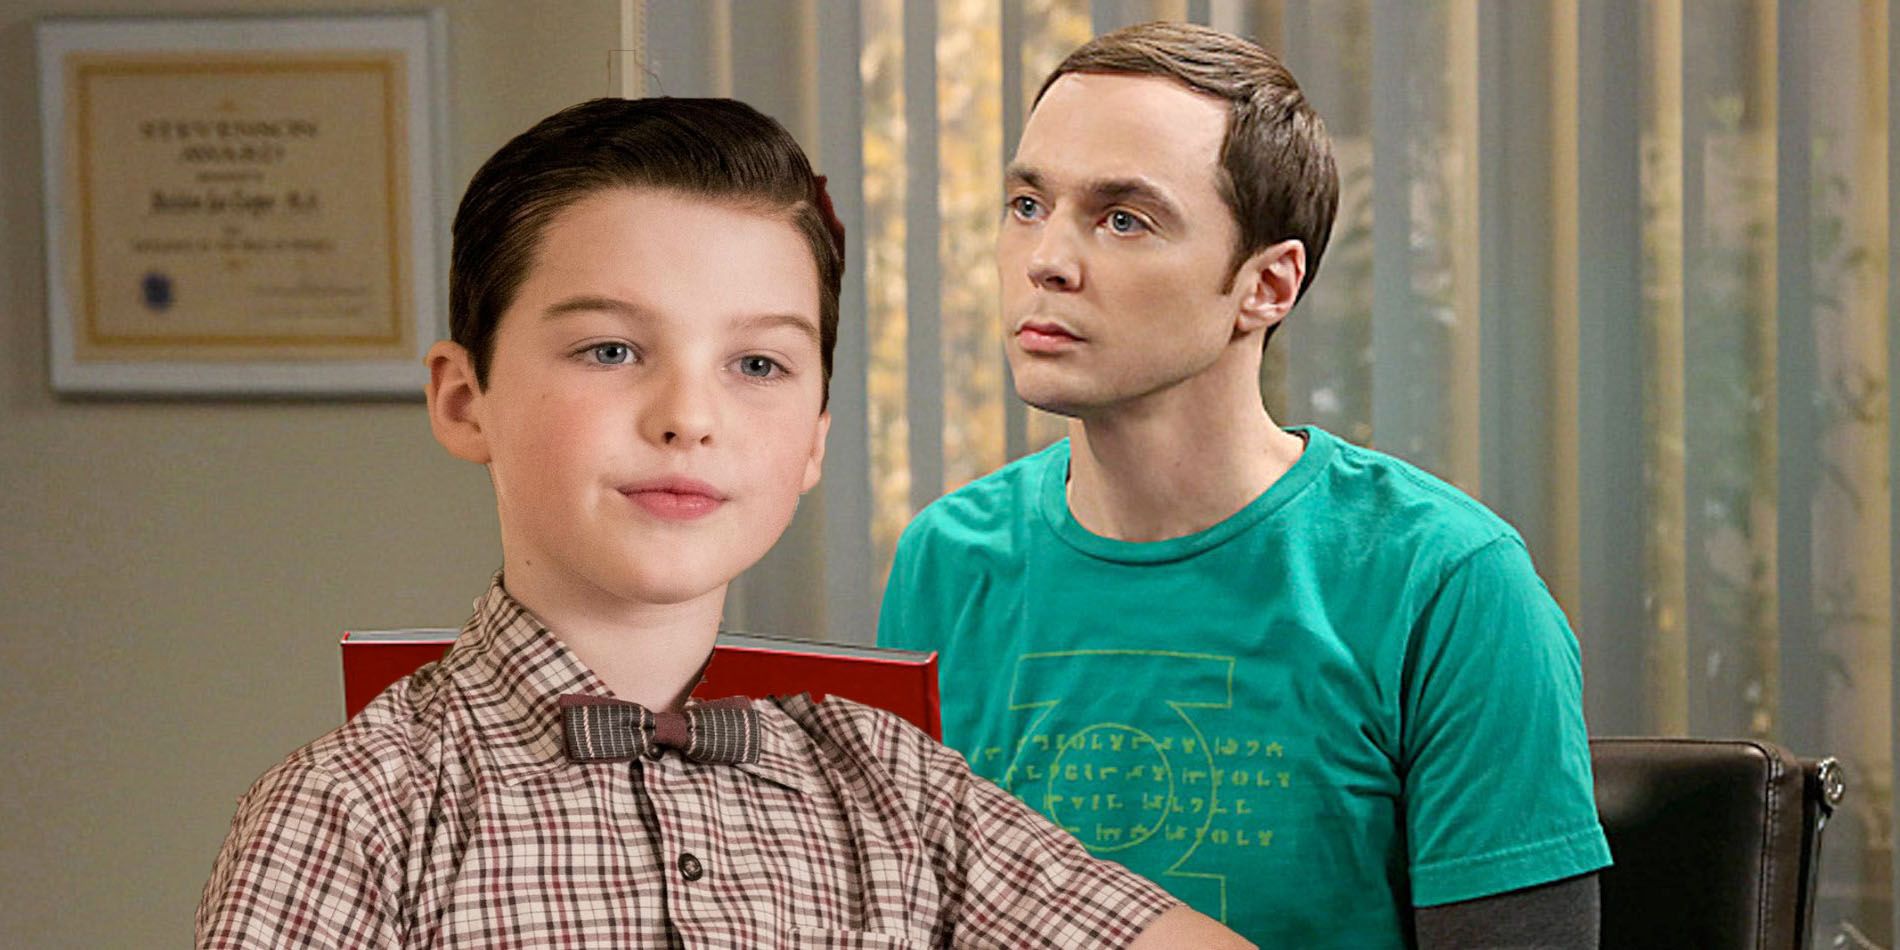 La cuarta temporada de Young Sheldon continuará con la historia de la teoría del Big Bang